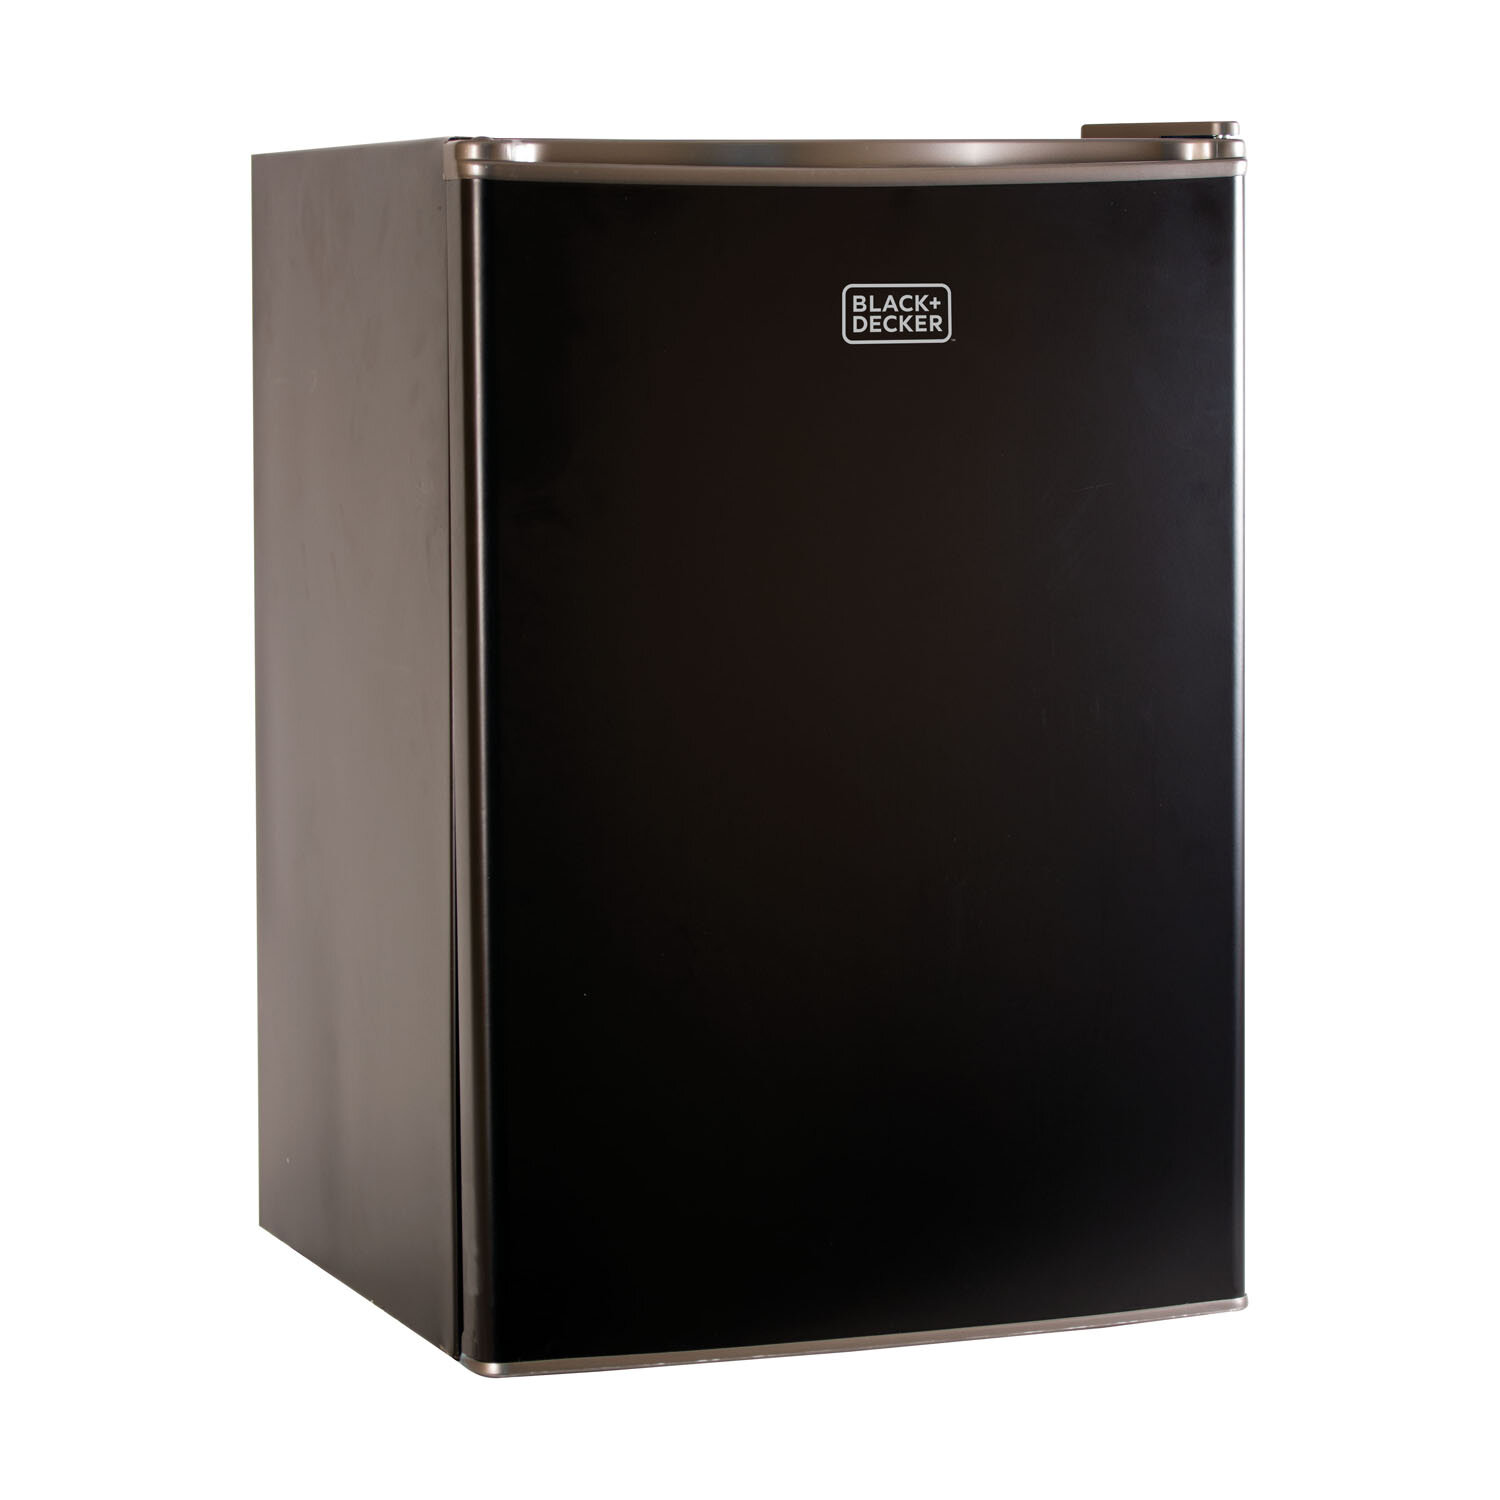 Black+decker Compact Refrigerator 1.7 Cu. Ft. With Door Storage